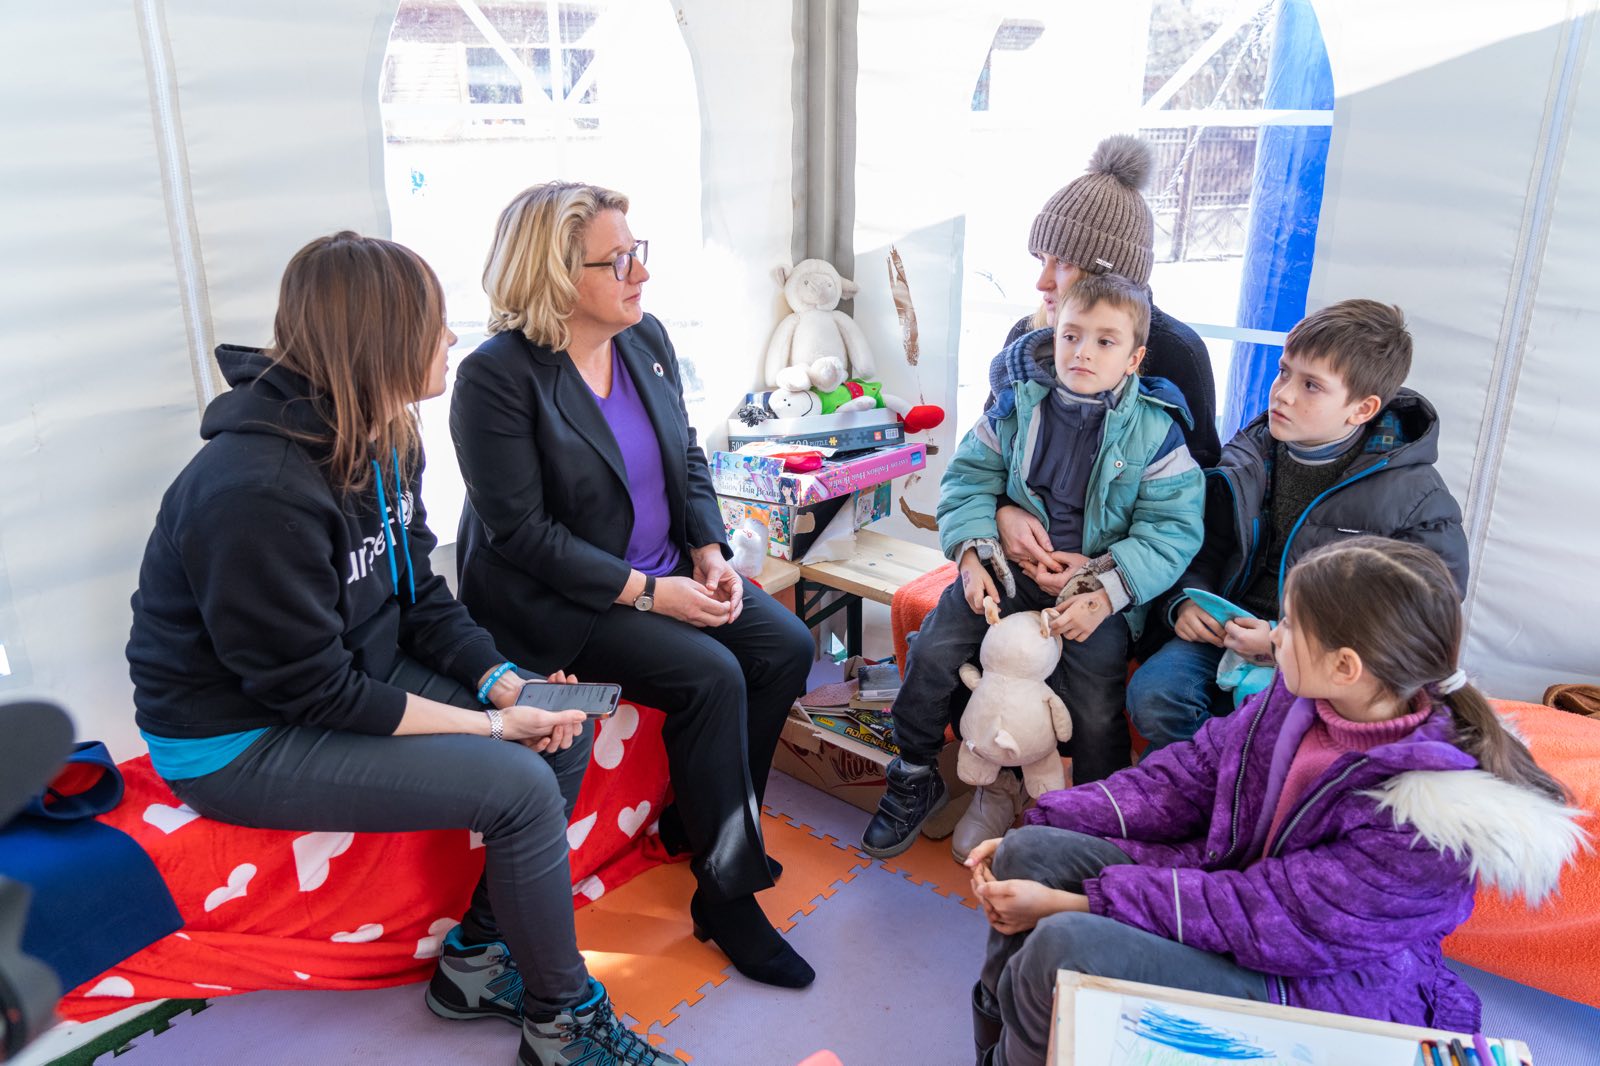 Entwicklungsministerin Svenja Schulze am rumänisch-ukrainischen Grenzübergang Sighet am 14. März 2022. Sie besuchte dort einen Blue Dot Hub, eine Anlaufstelle von UNICEF für Frauen und Kinder, die vor dem Krieg in der Ukraine geflohen sind.